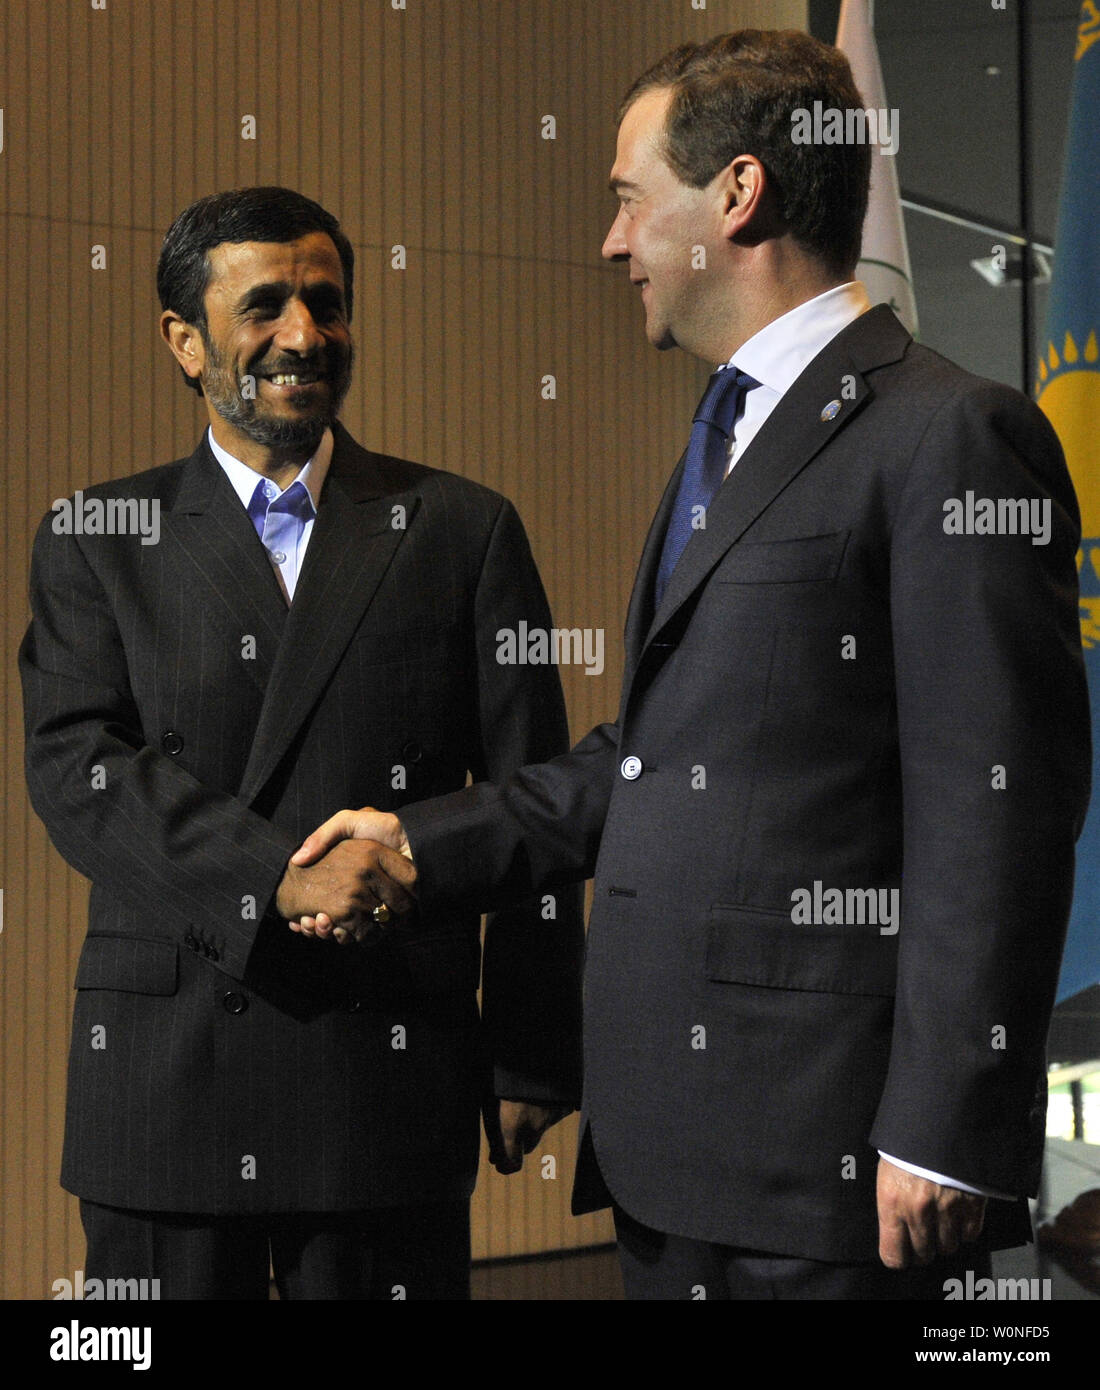 Der russische Präsident Dmitri Medwedew (R) schüttelt Hände, die mit dem iranischen Präsidenten Mahmud Ahmadinedschad während eines Gipfels der Shanghaier Organisation für Zusammenarbeit (SCO) im Ural Stadt Jekaterinburg am 16. Juni 2009. Zusammen mit den Führern von Afghanistan, Pakistan und Indien Ahmadinedschad trat der SCO-Gipfel der Gruppen, Russland, China, Kasachstan, Usbekistan, Tadschikistan und Kirgisistan. (UPI Foto/Alex Volgin) Stockfoto